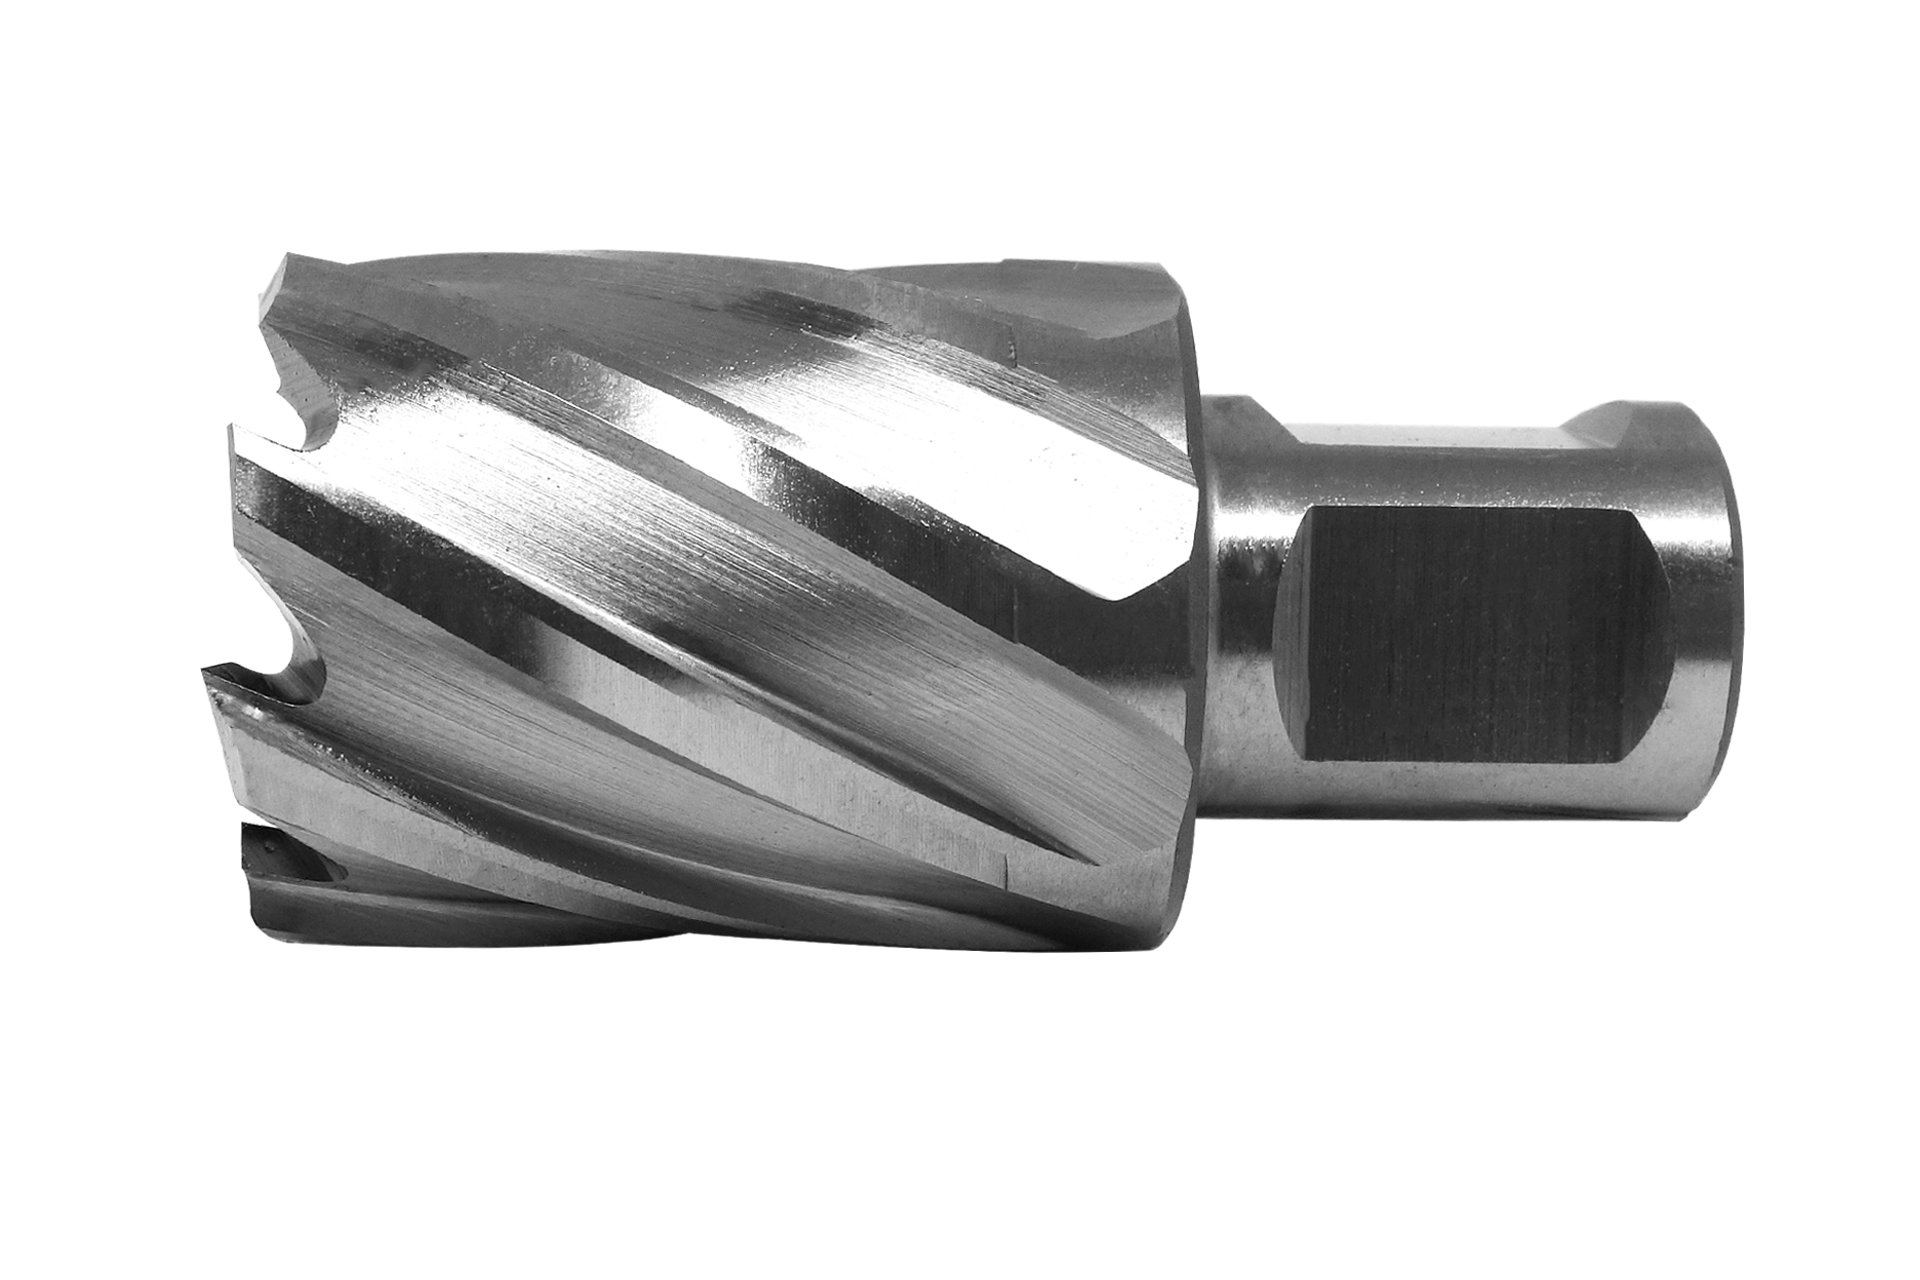 HSS-Kernbohrer mit Bohrtiefe 30 mm, Ø 32 mm